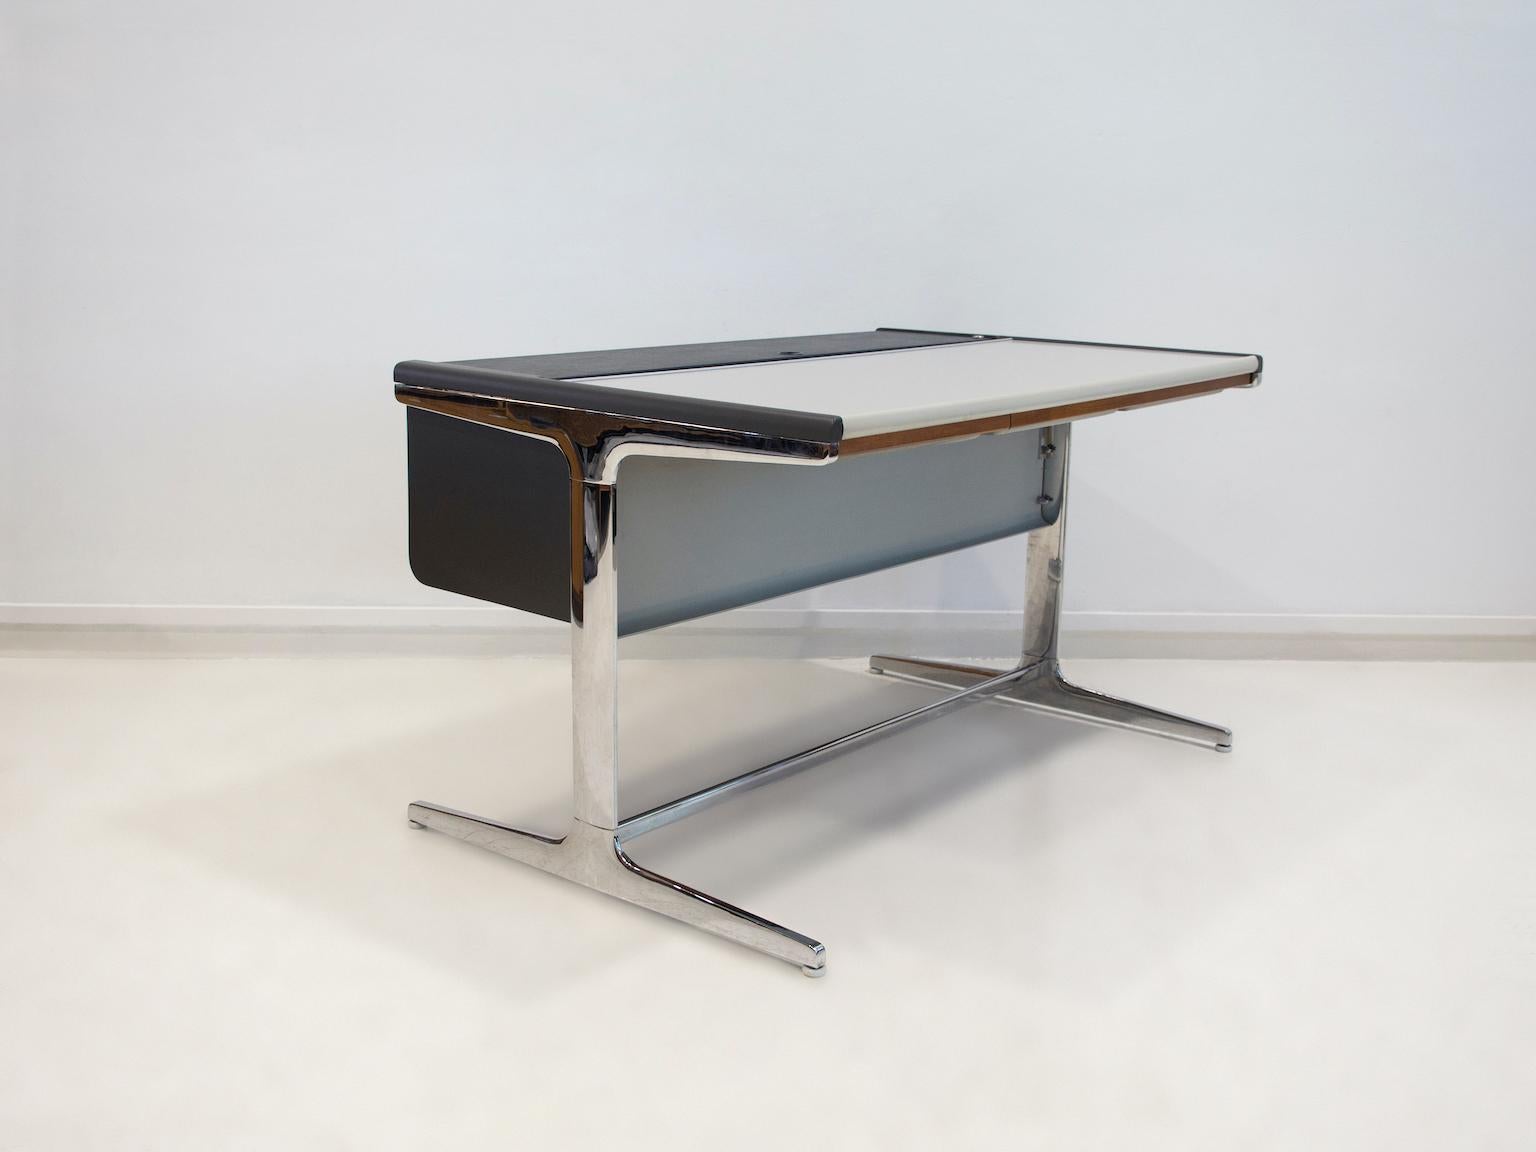 Action Office Schreibtisch, Modell 64 902, entworfen von George Nelson & Robert Propst für Herman Miller aus den 1960er Jahren. Sockel aus verchromtem Aluminium mit weißen Kunststoffschützern. Abschließbarer Klappdeckel mit schwarzem Kunstlederbezug